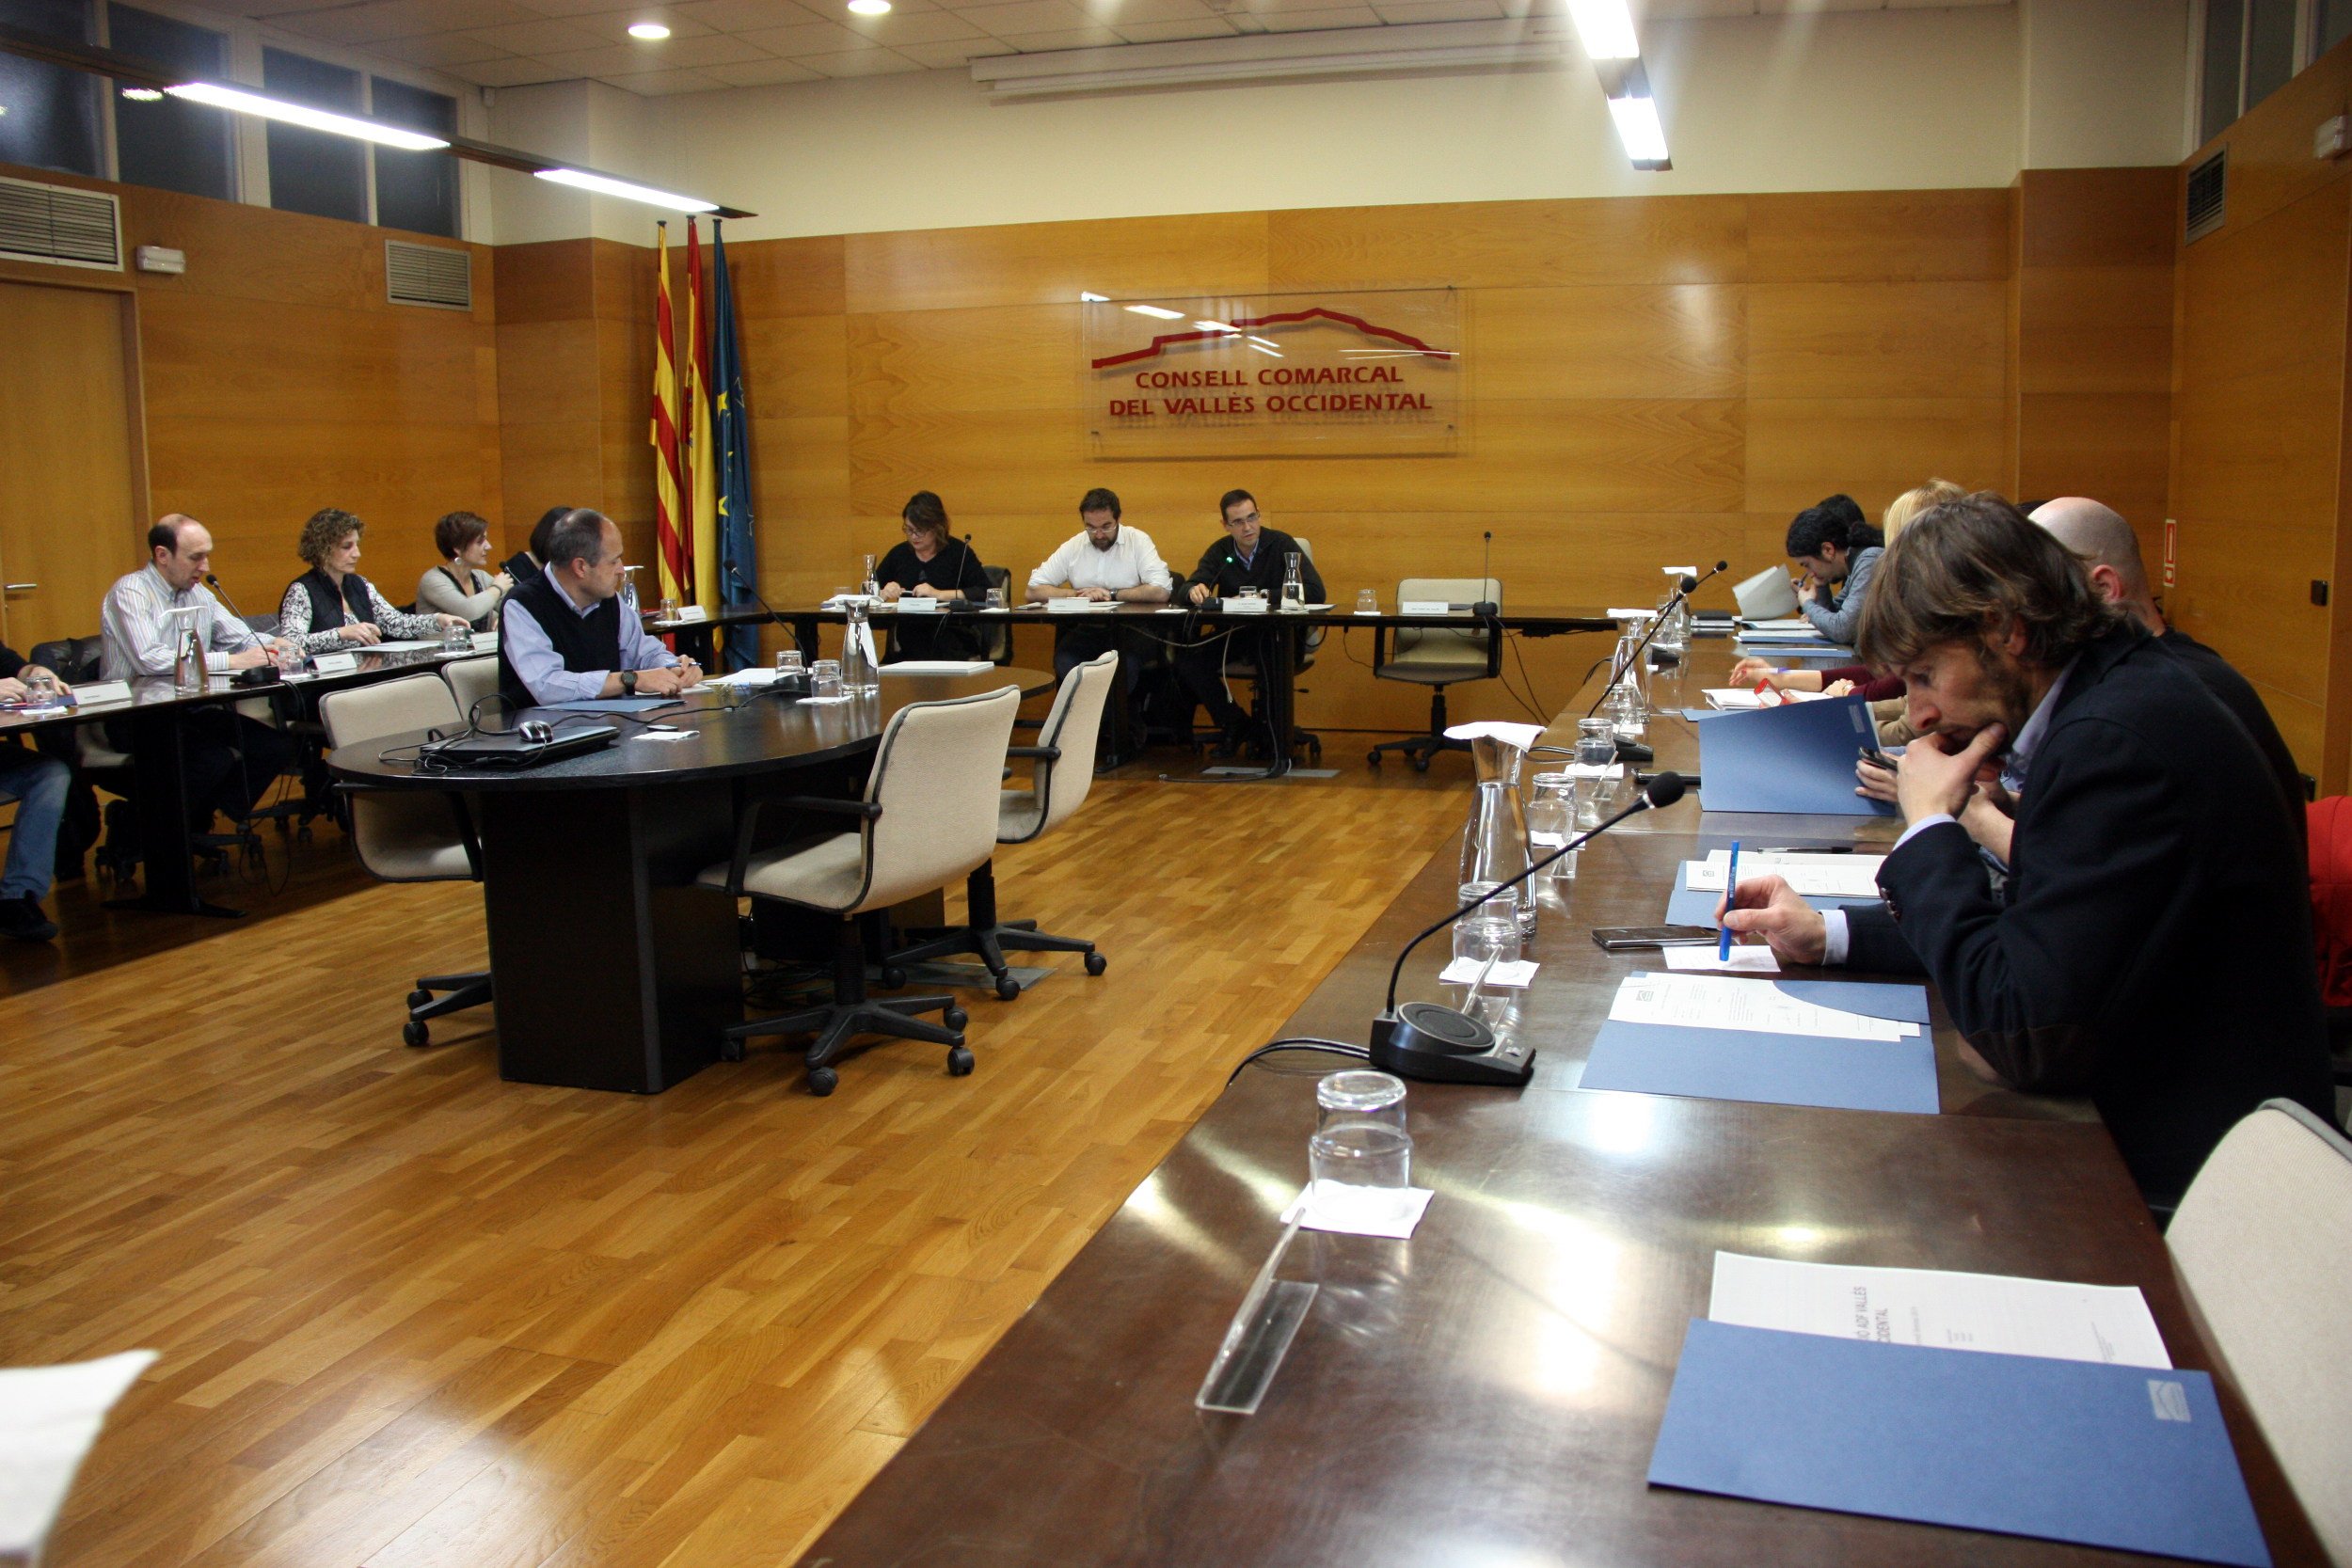 Tripartit de JxCat, el PSC i els comuns als consells comarcals dels dos Vallès